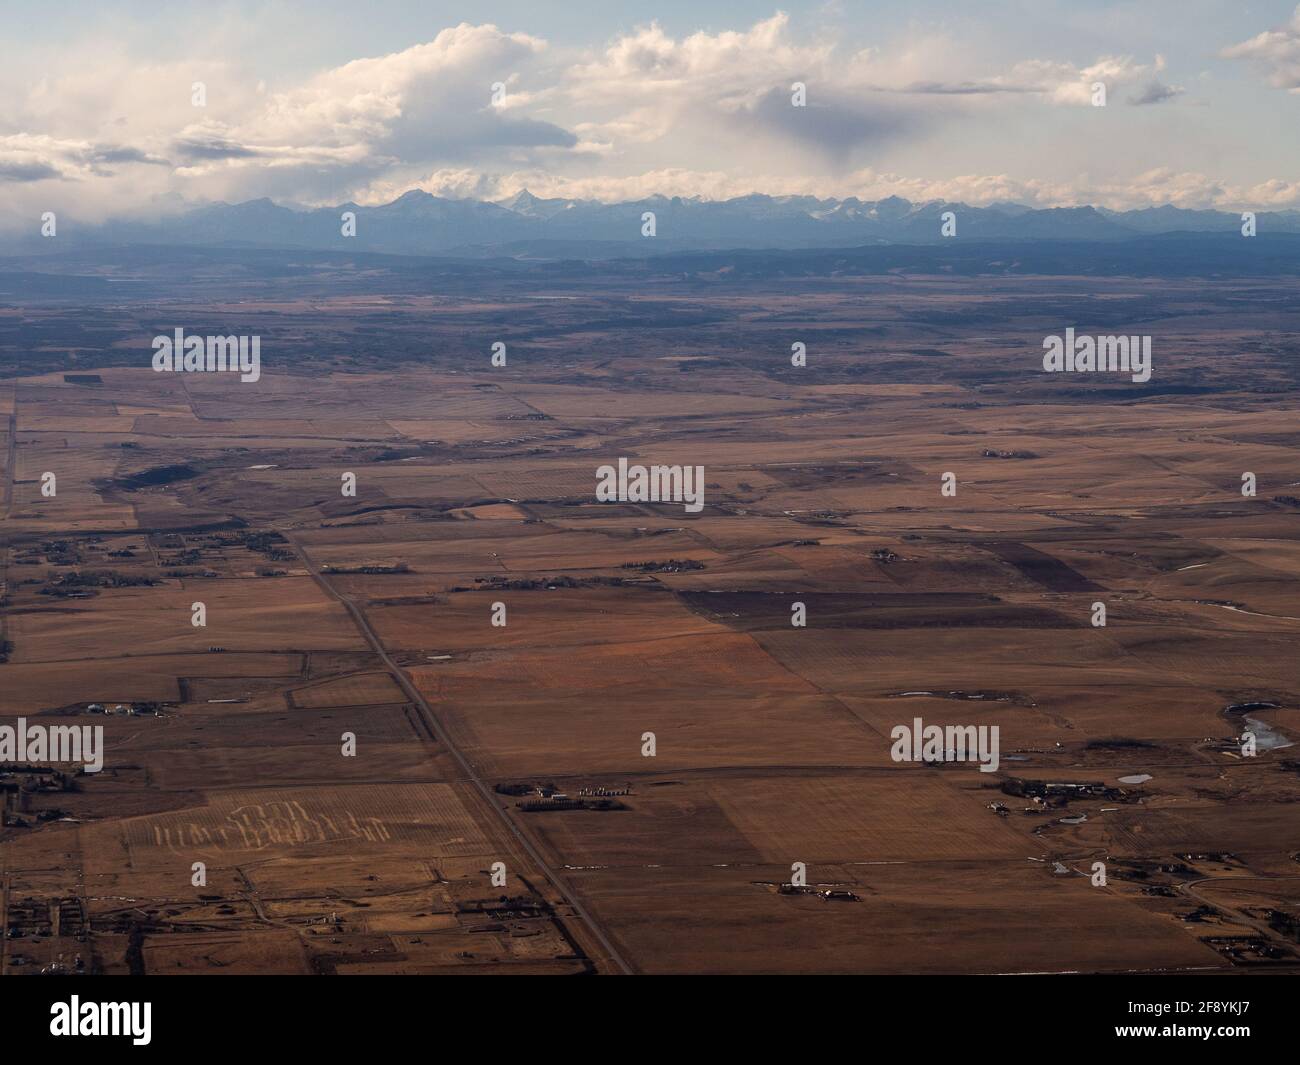 vista aerea del terreno agricolo con le montagne in lontananza Foto Stock